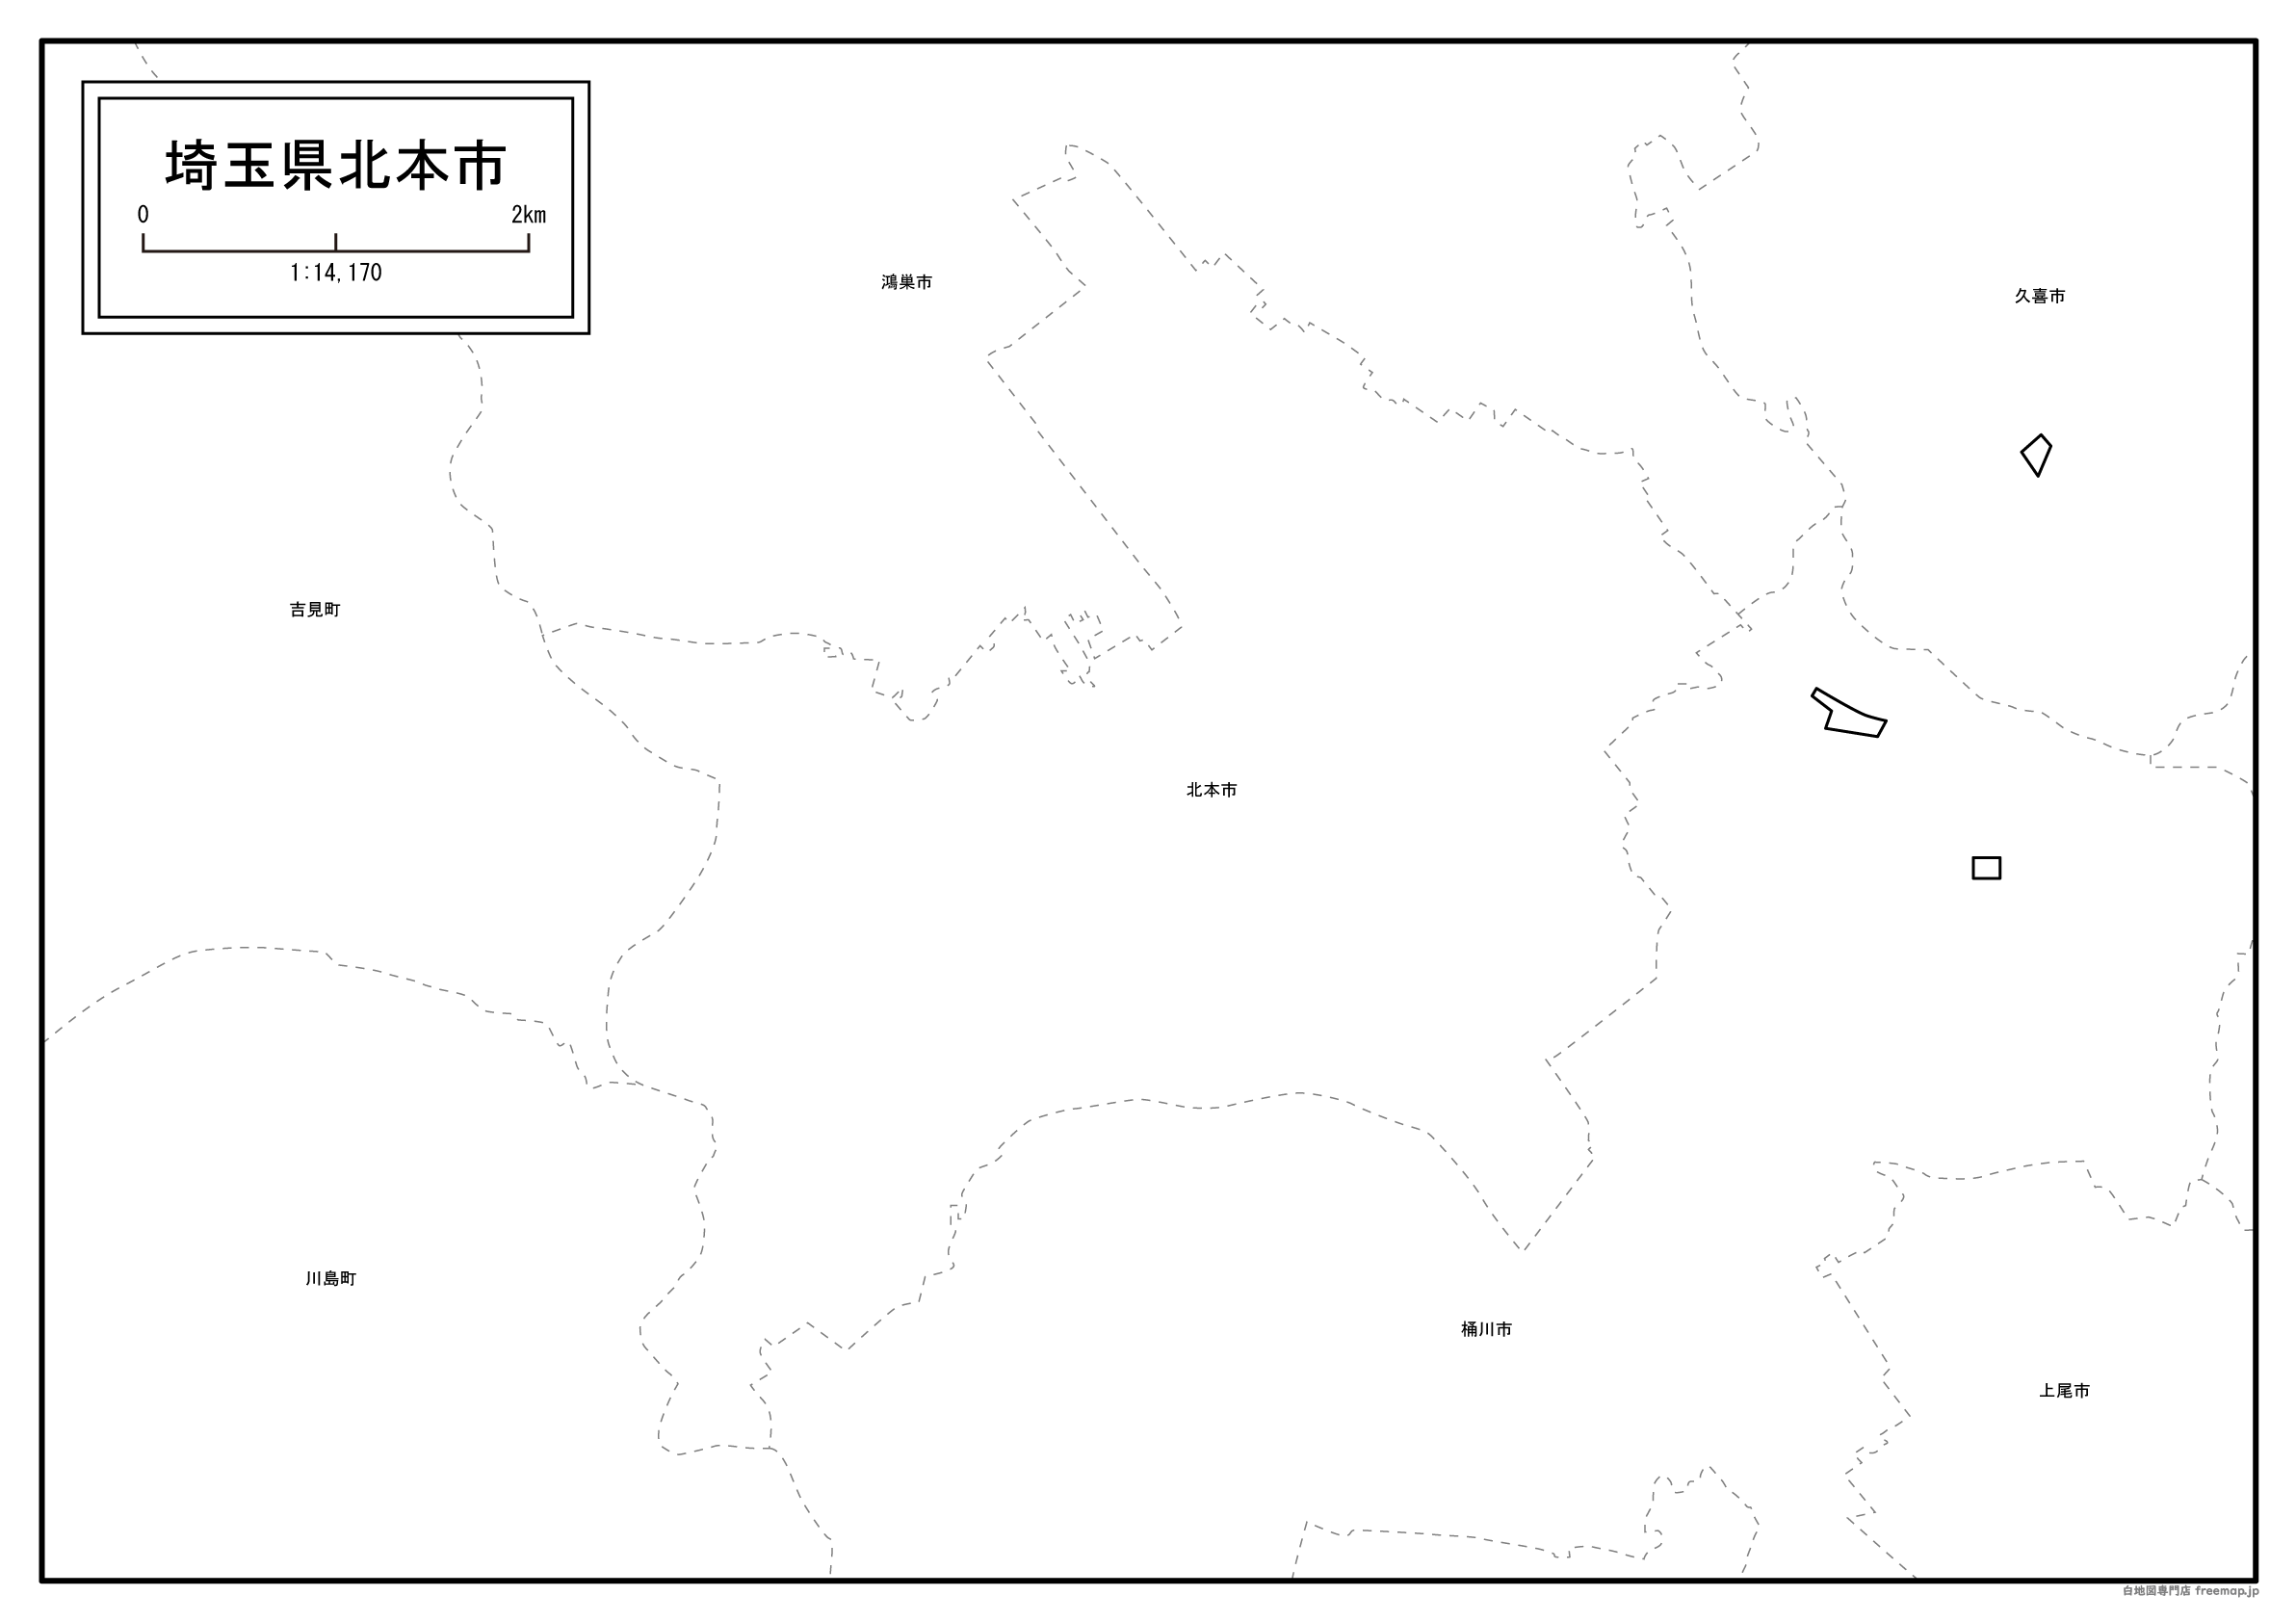 北本市の白地図を無料ダウンロードdownload Kitamoto's map for free of charge.